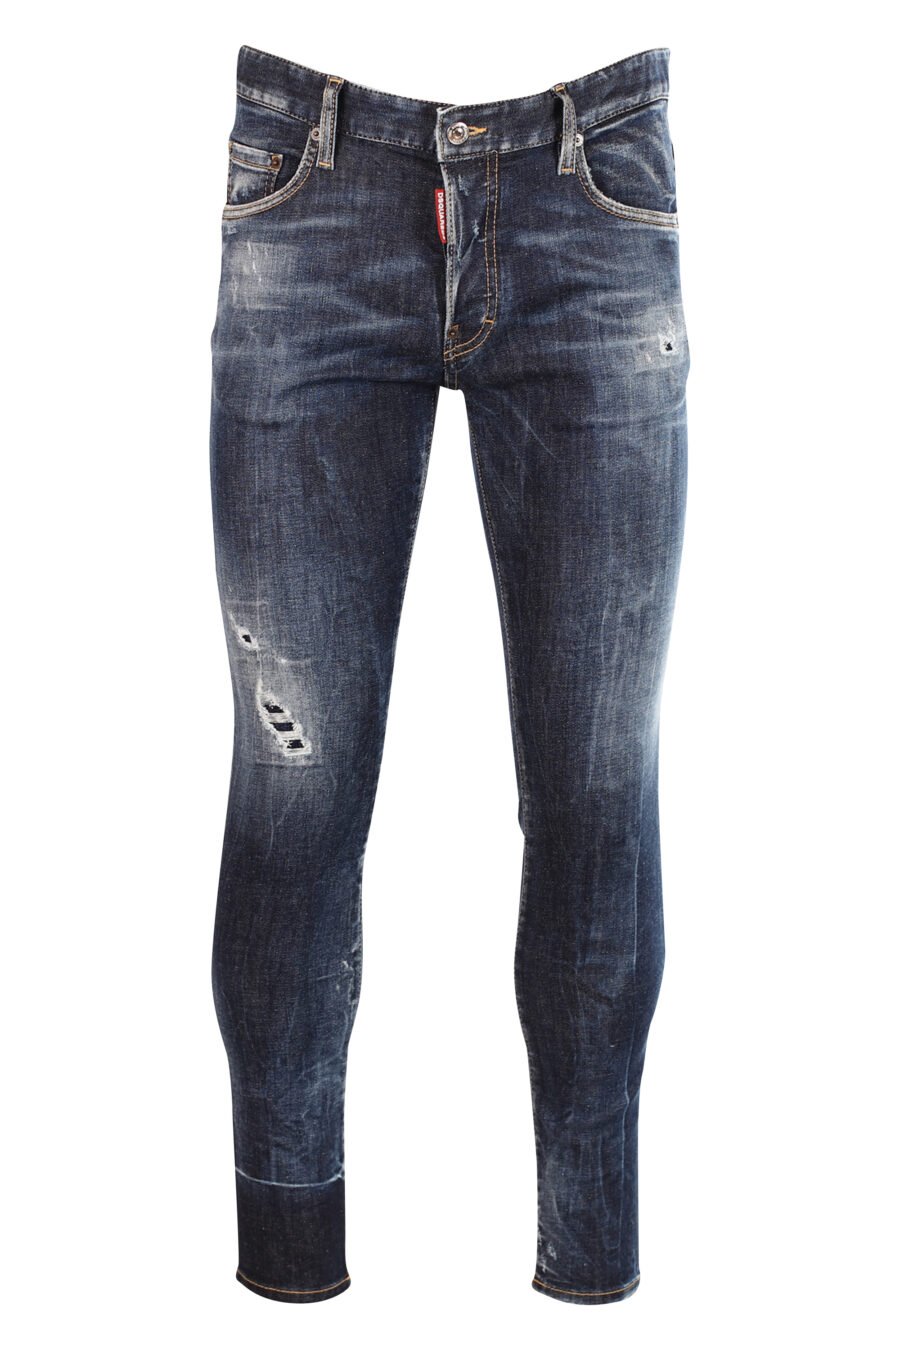 Jeans "super twinkey jean" bleu avec déchirures - 8052134966914